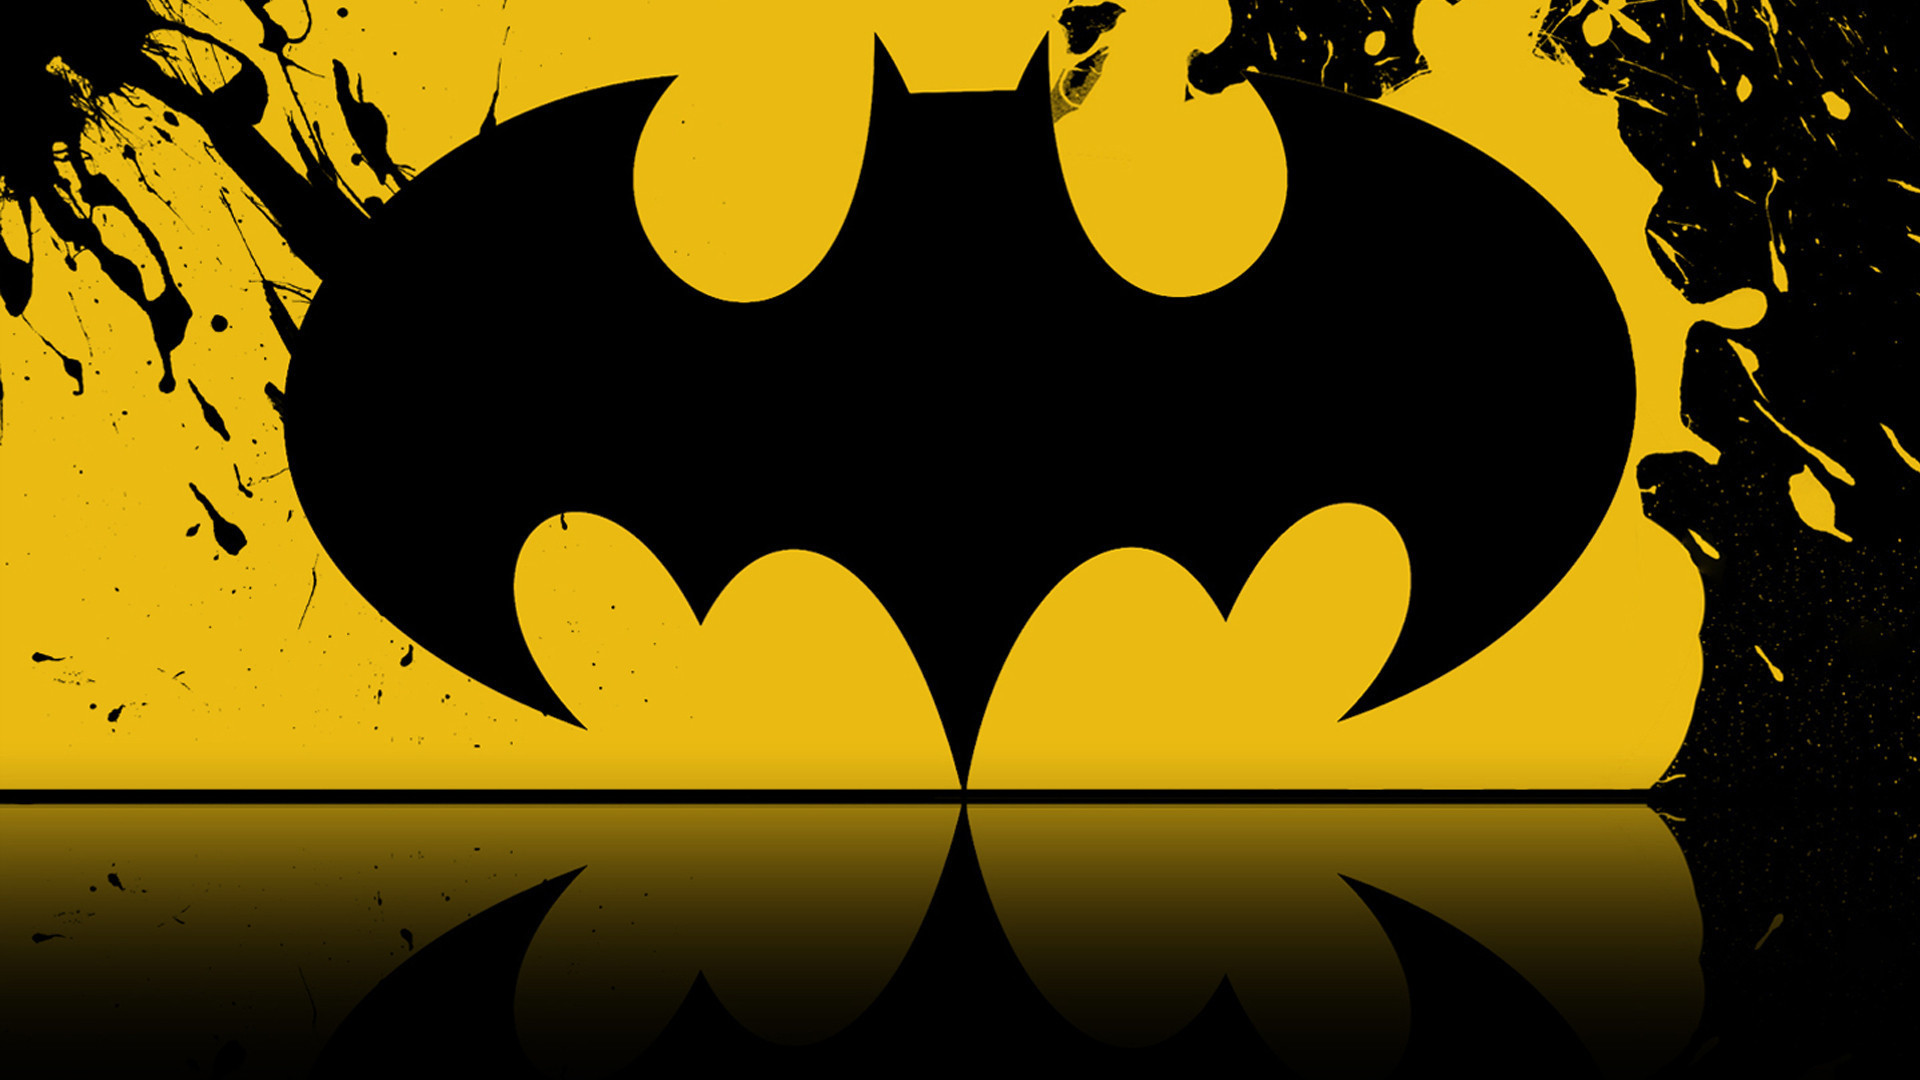 1920x1080 batman 1950s logo wallpaper - Google Search